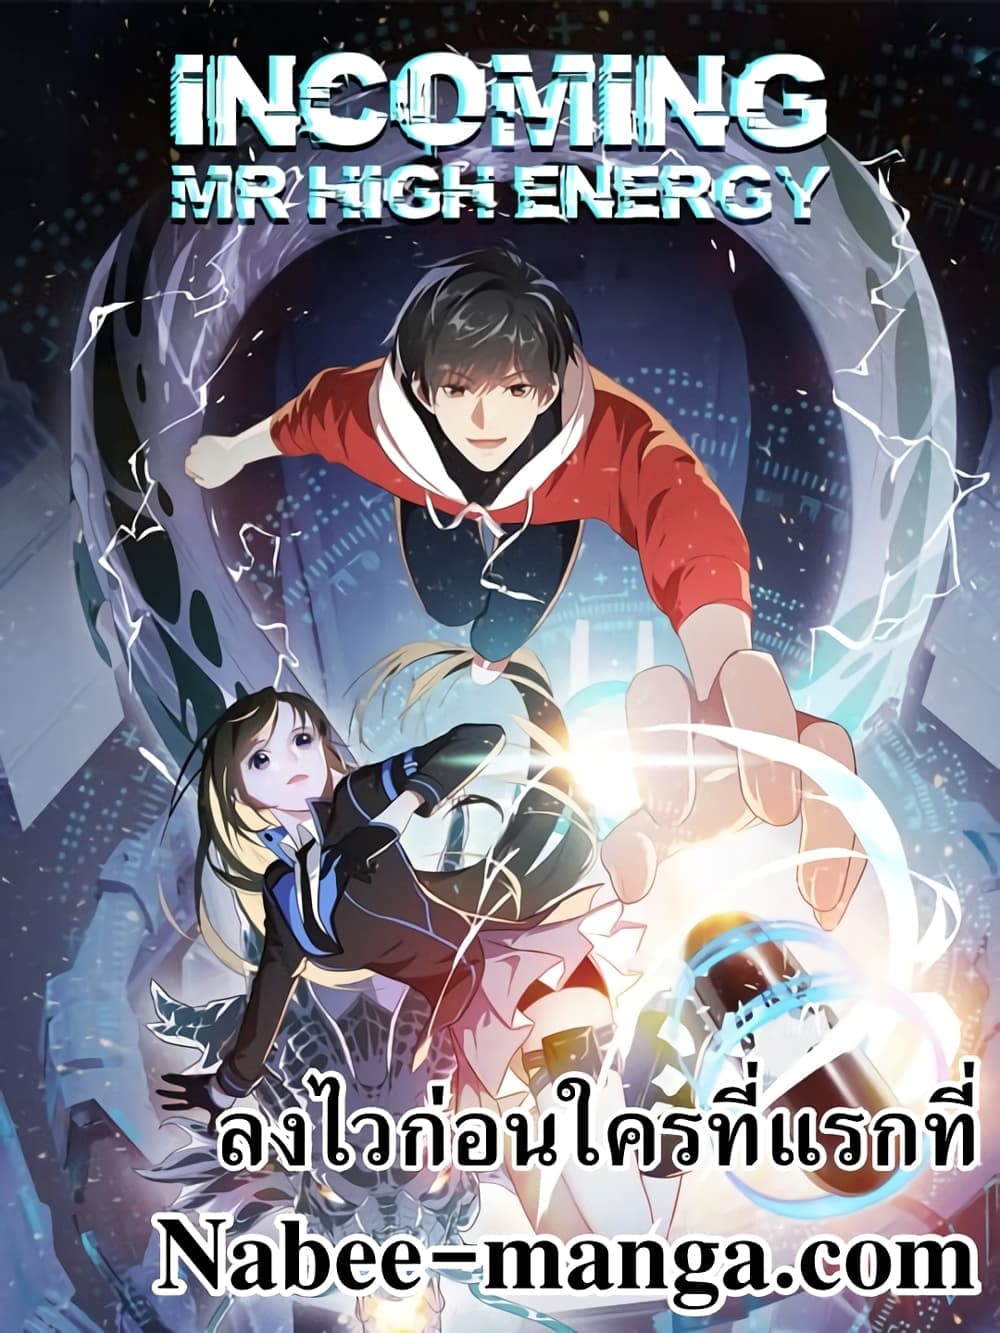 High Energy Strikes 180-180